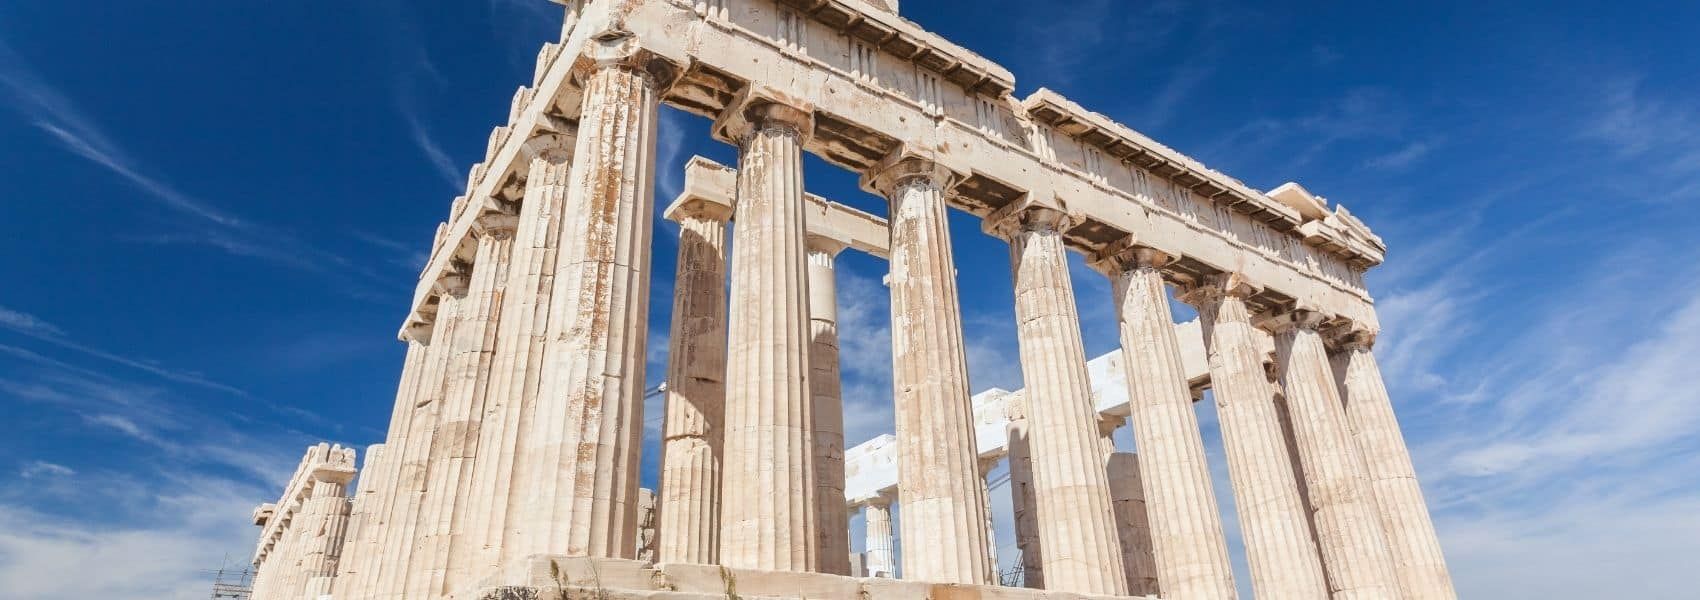 Cosa vedere in grecia tra templi e mare spettacolare